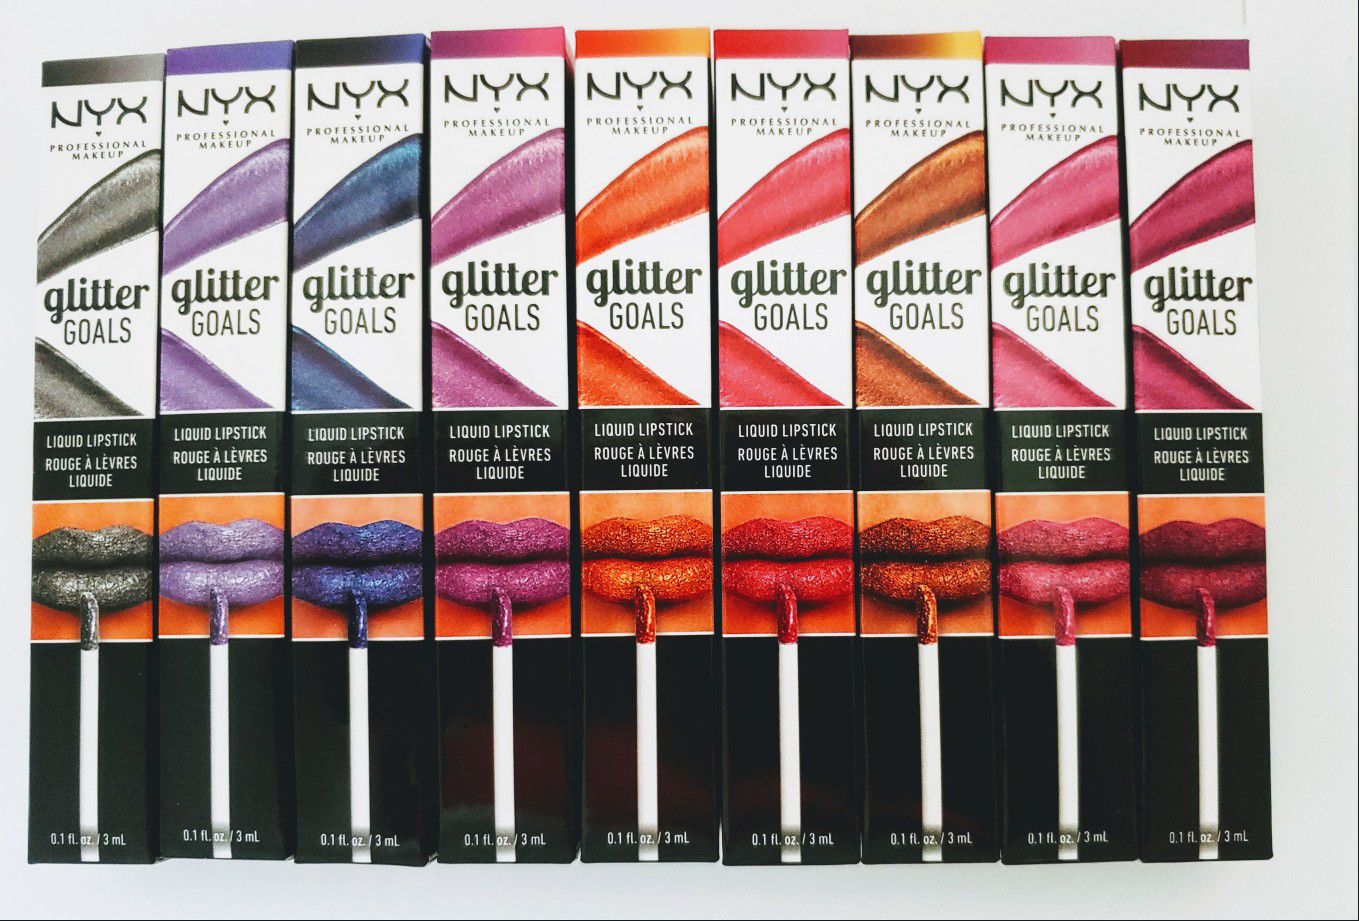 Nyx Glitter Goals liquid lipstick